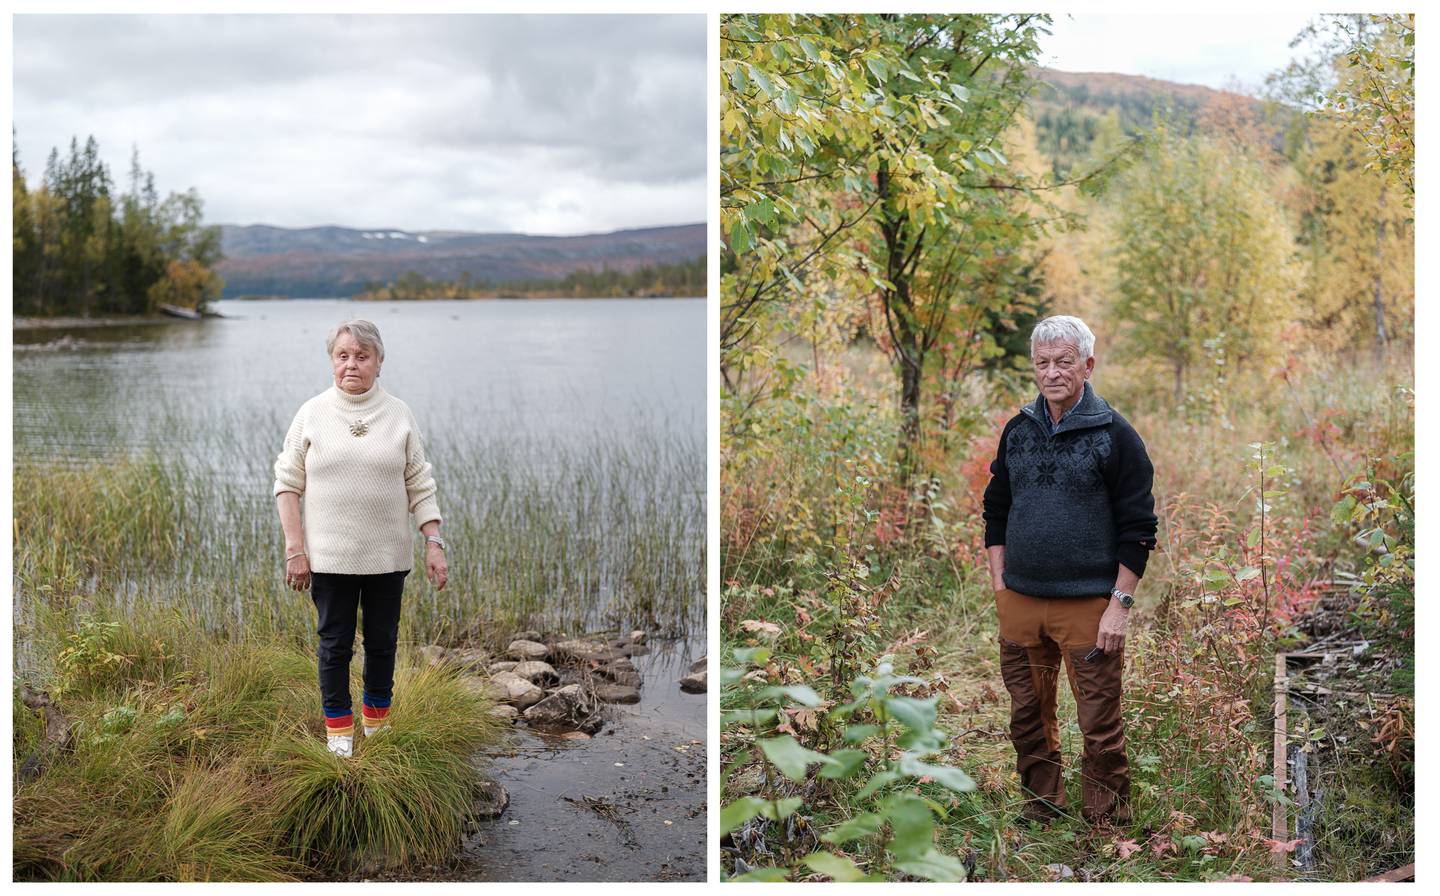 Hovedsak om samisk tro, forsoning og vindkraft. 

Betty Kappfjell og Sigbjørn Dunfjeld